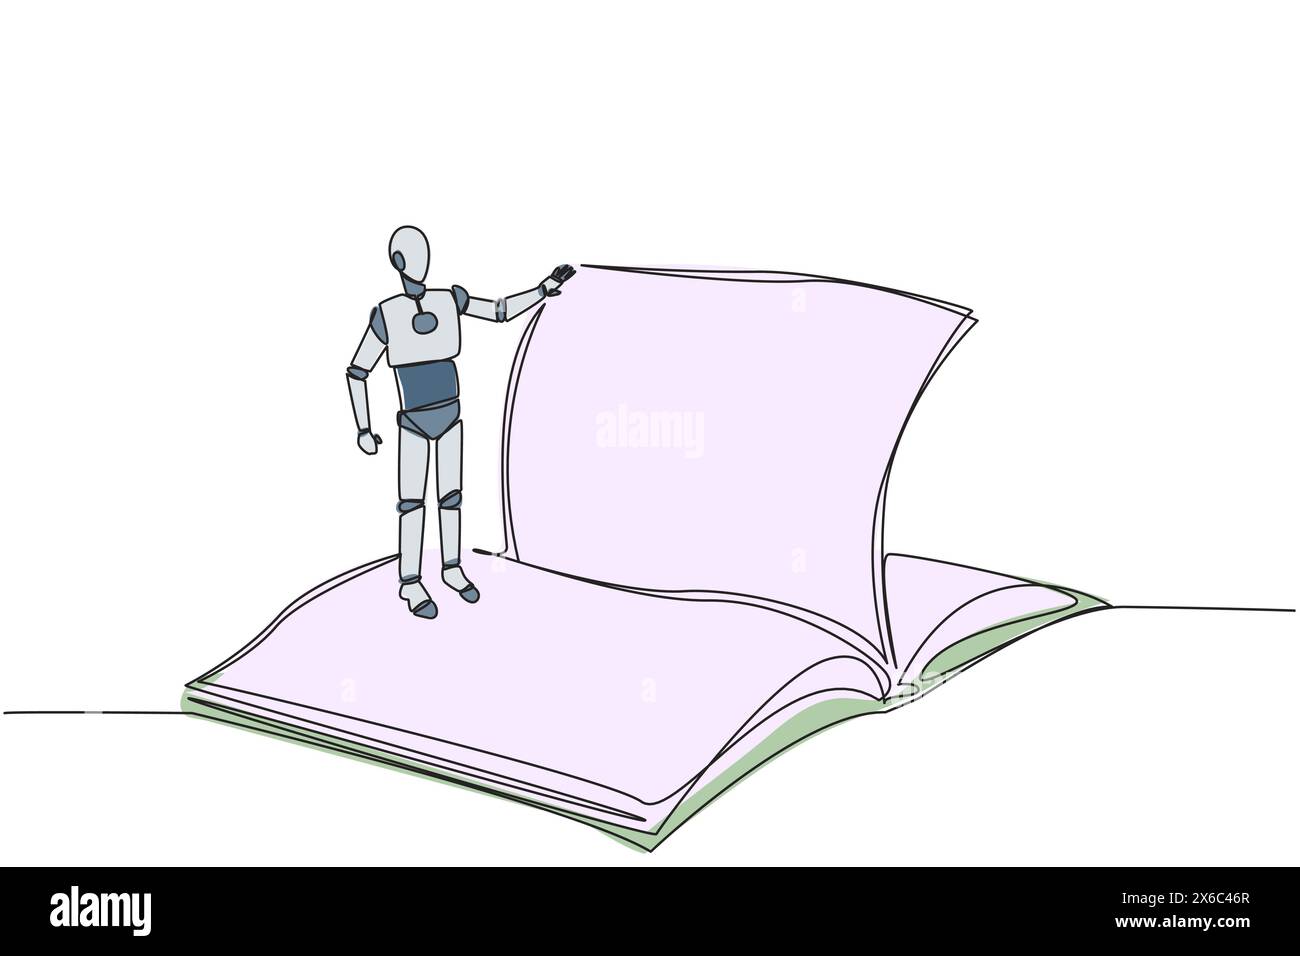 Intelligente Roboterzeichnung mit einer einzigen Zeile, die über dem geöffneten Buch steht. Lesen Sie langsam durch, um den Inhalt jeder Seite zu verstehen. Der Messwert erhöht sich insig Stock Vektor